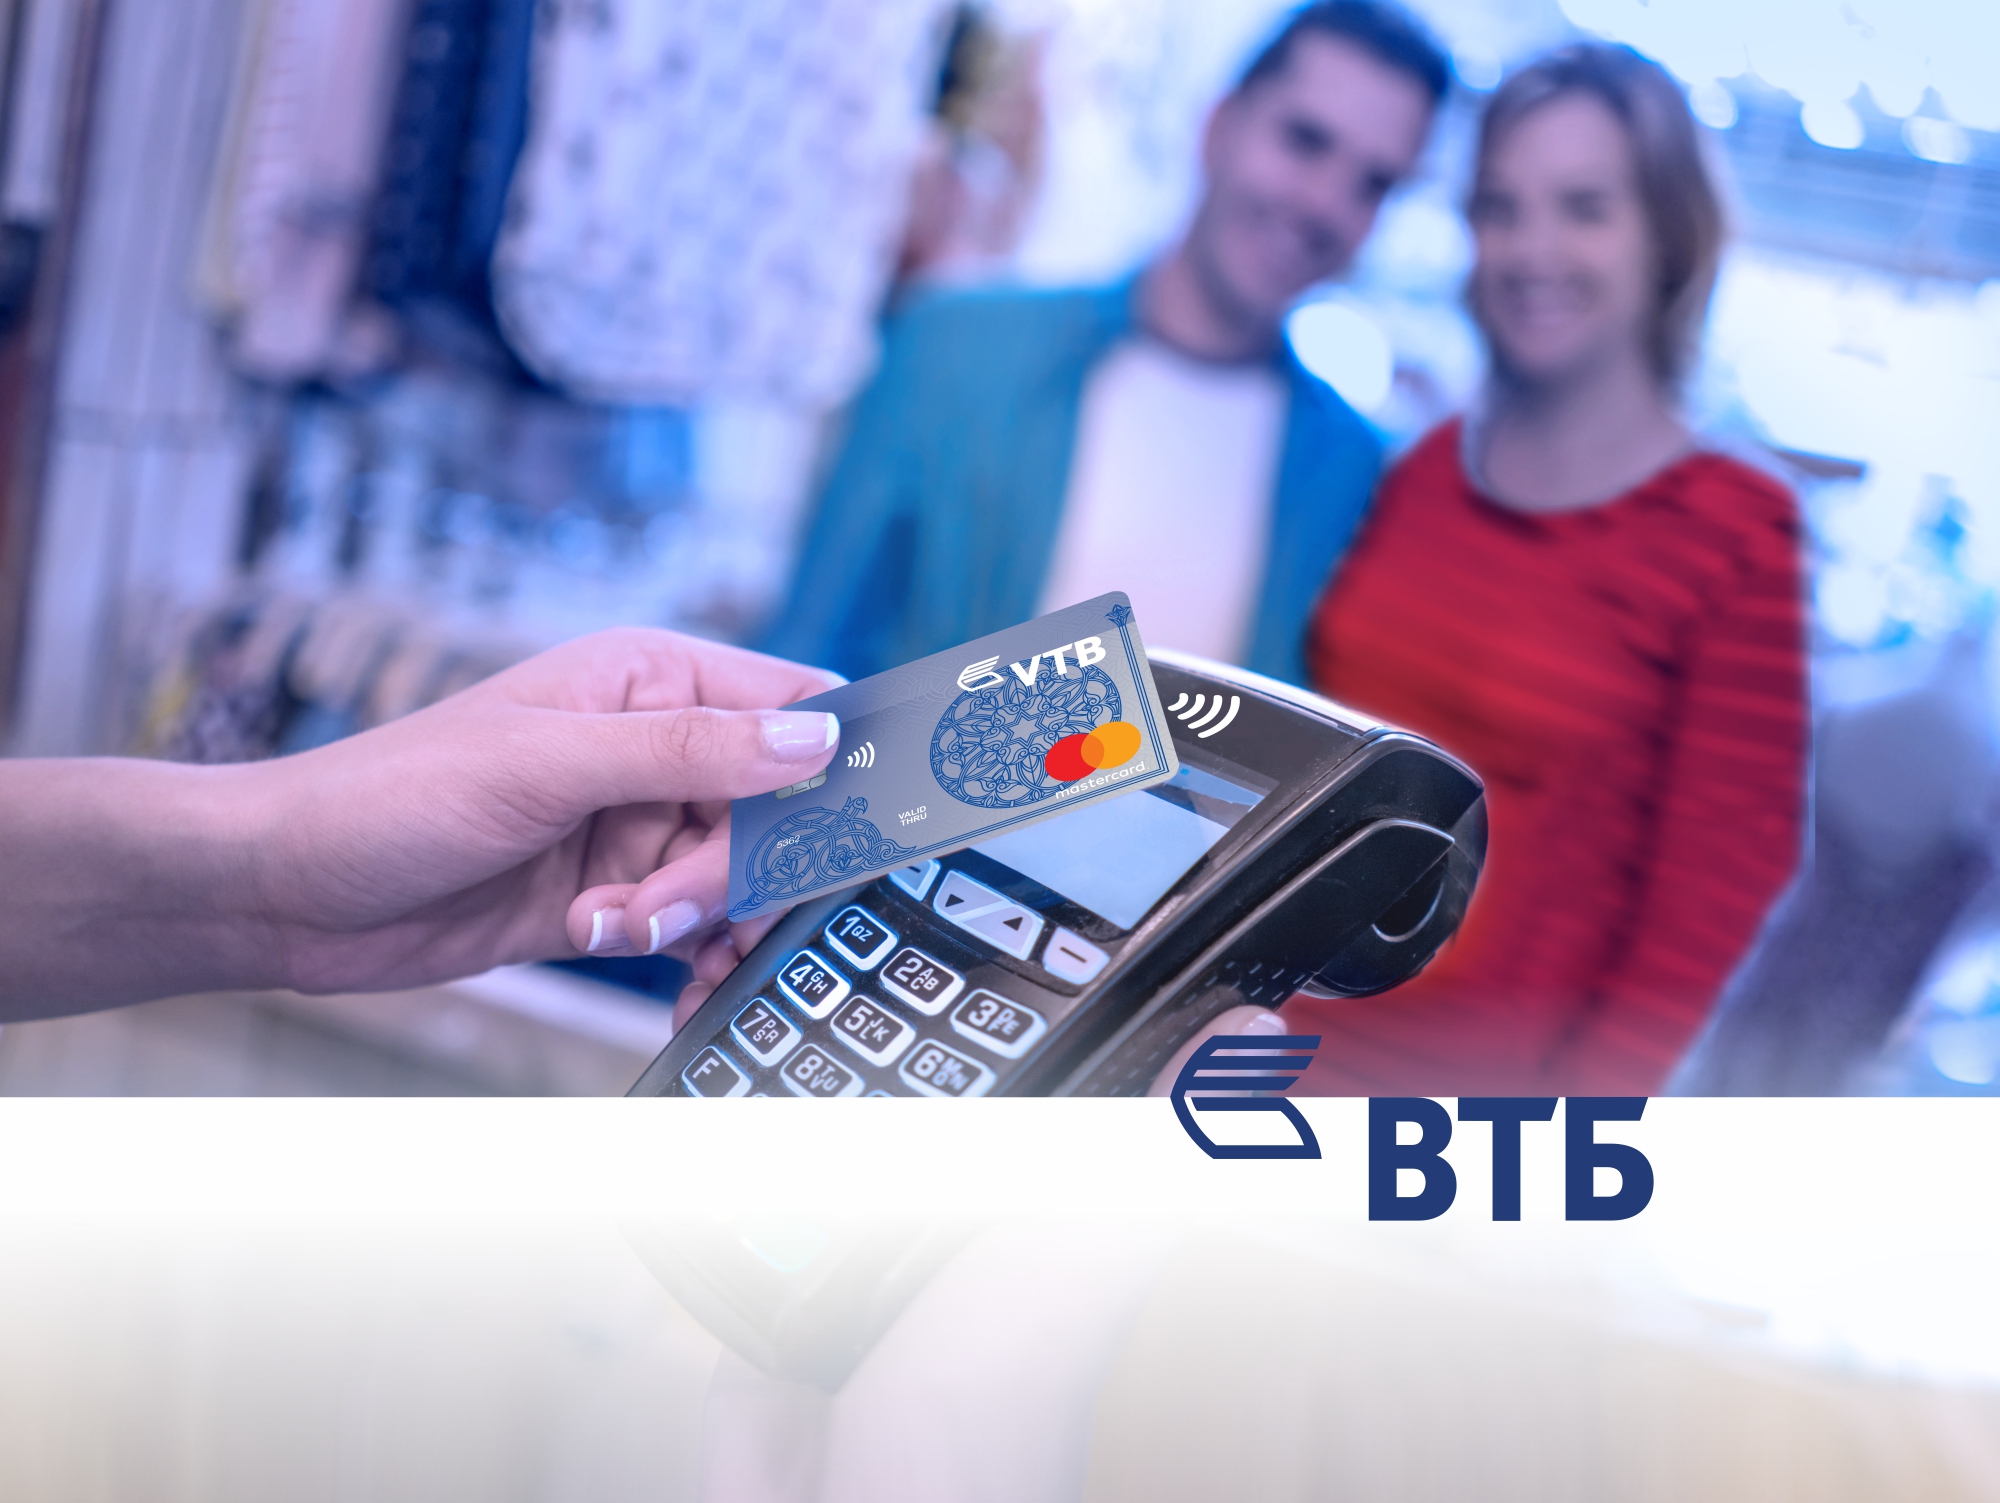 ՎՏԲ-Հայաստան Բանկն առևտրային կետերում սկսել է Mastercard PayPass ոչ կոնտակտային քարտերի սպասարկումը